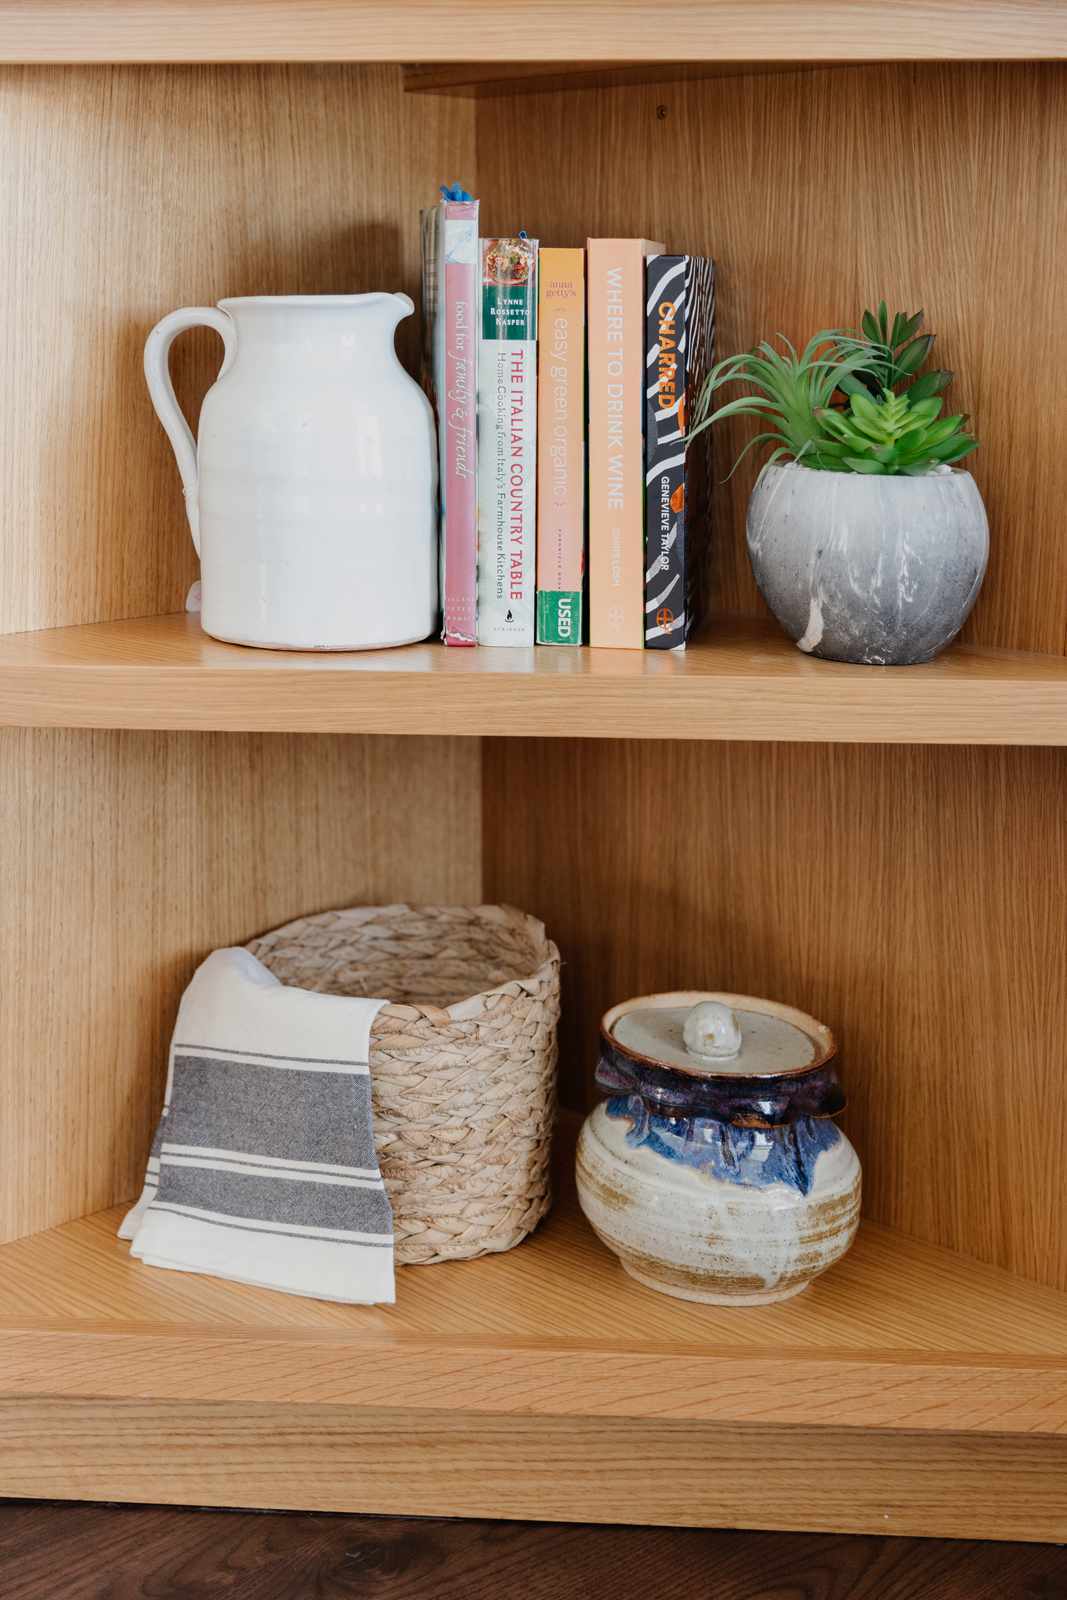 Holzeckregal mit Kochbüchern, Pflanzen und anderen kleinen Dekorationsartikeln